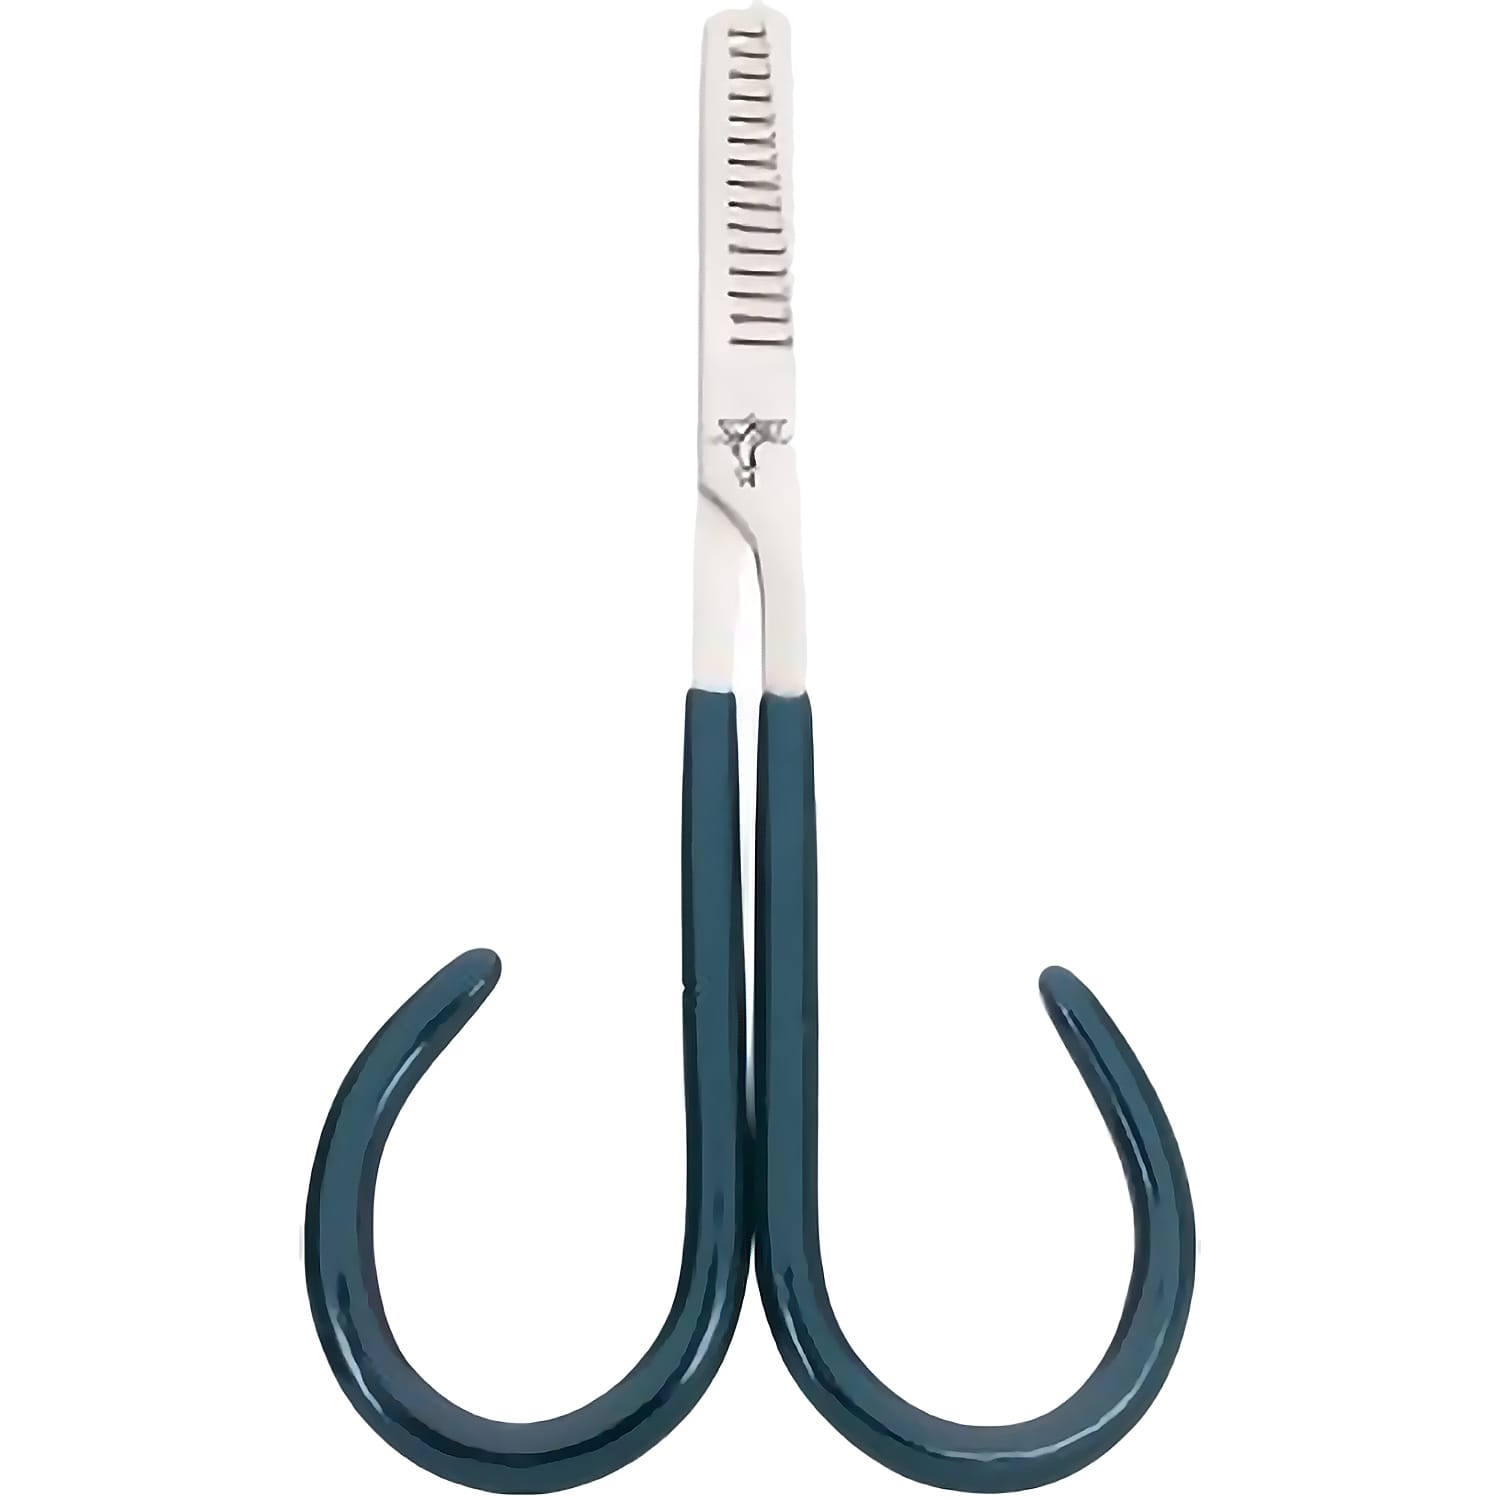 Dr. Slick Open Loop Thinning Scissors